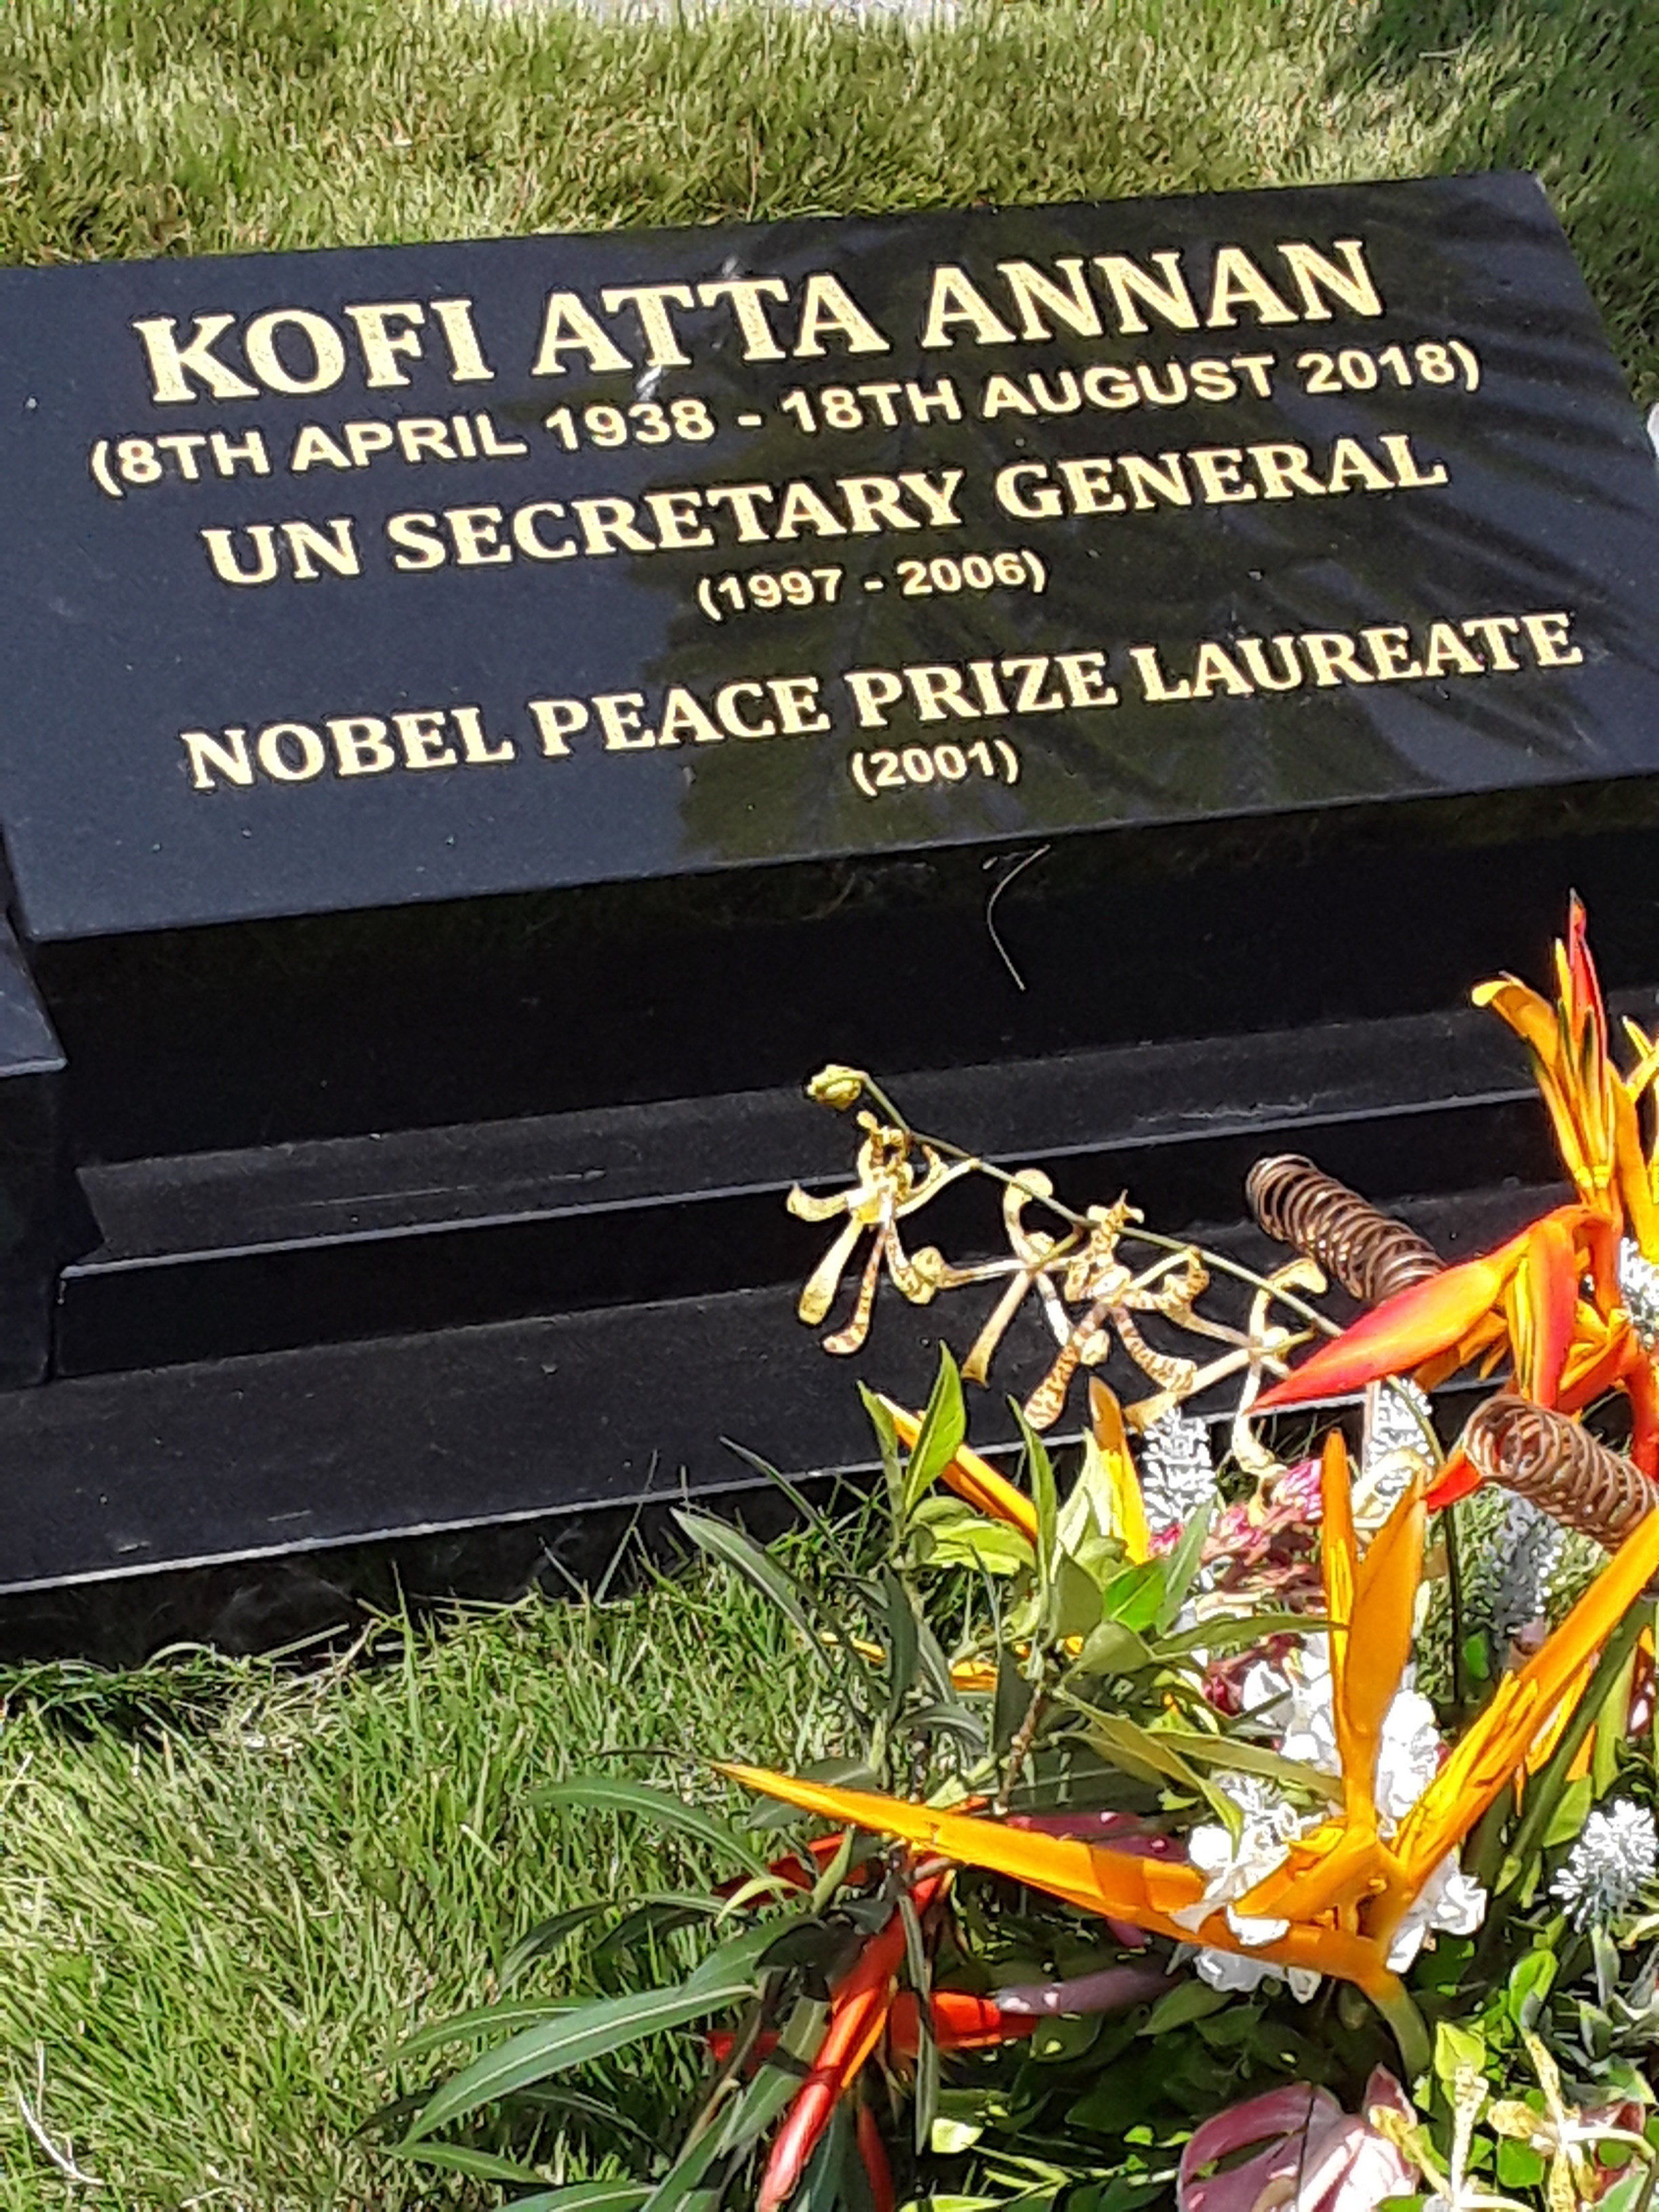 Kofi Annan's grave